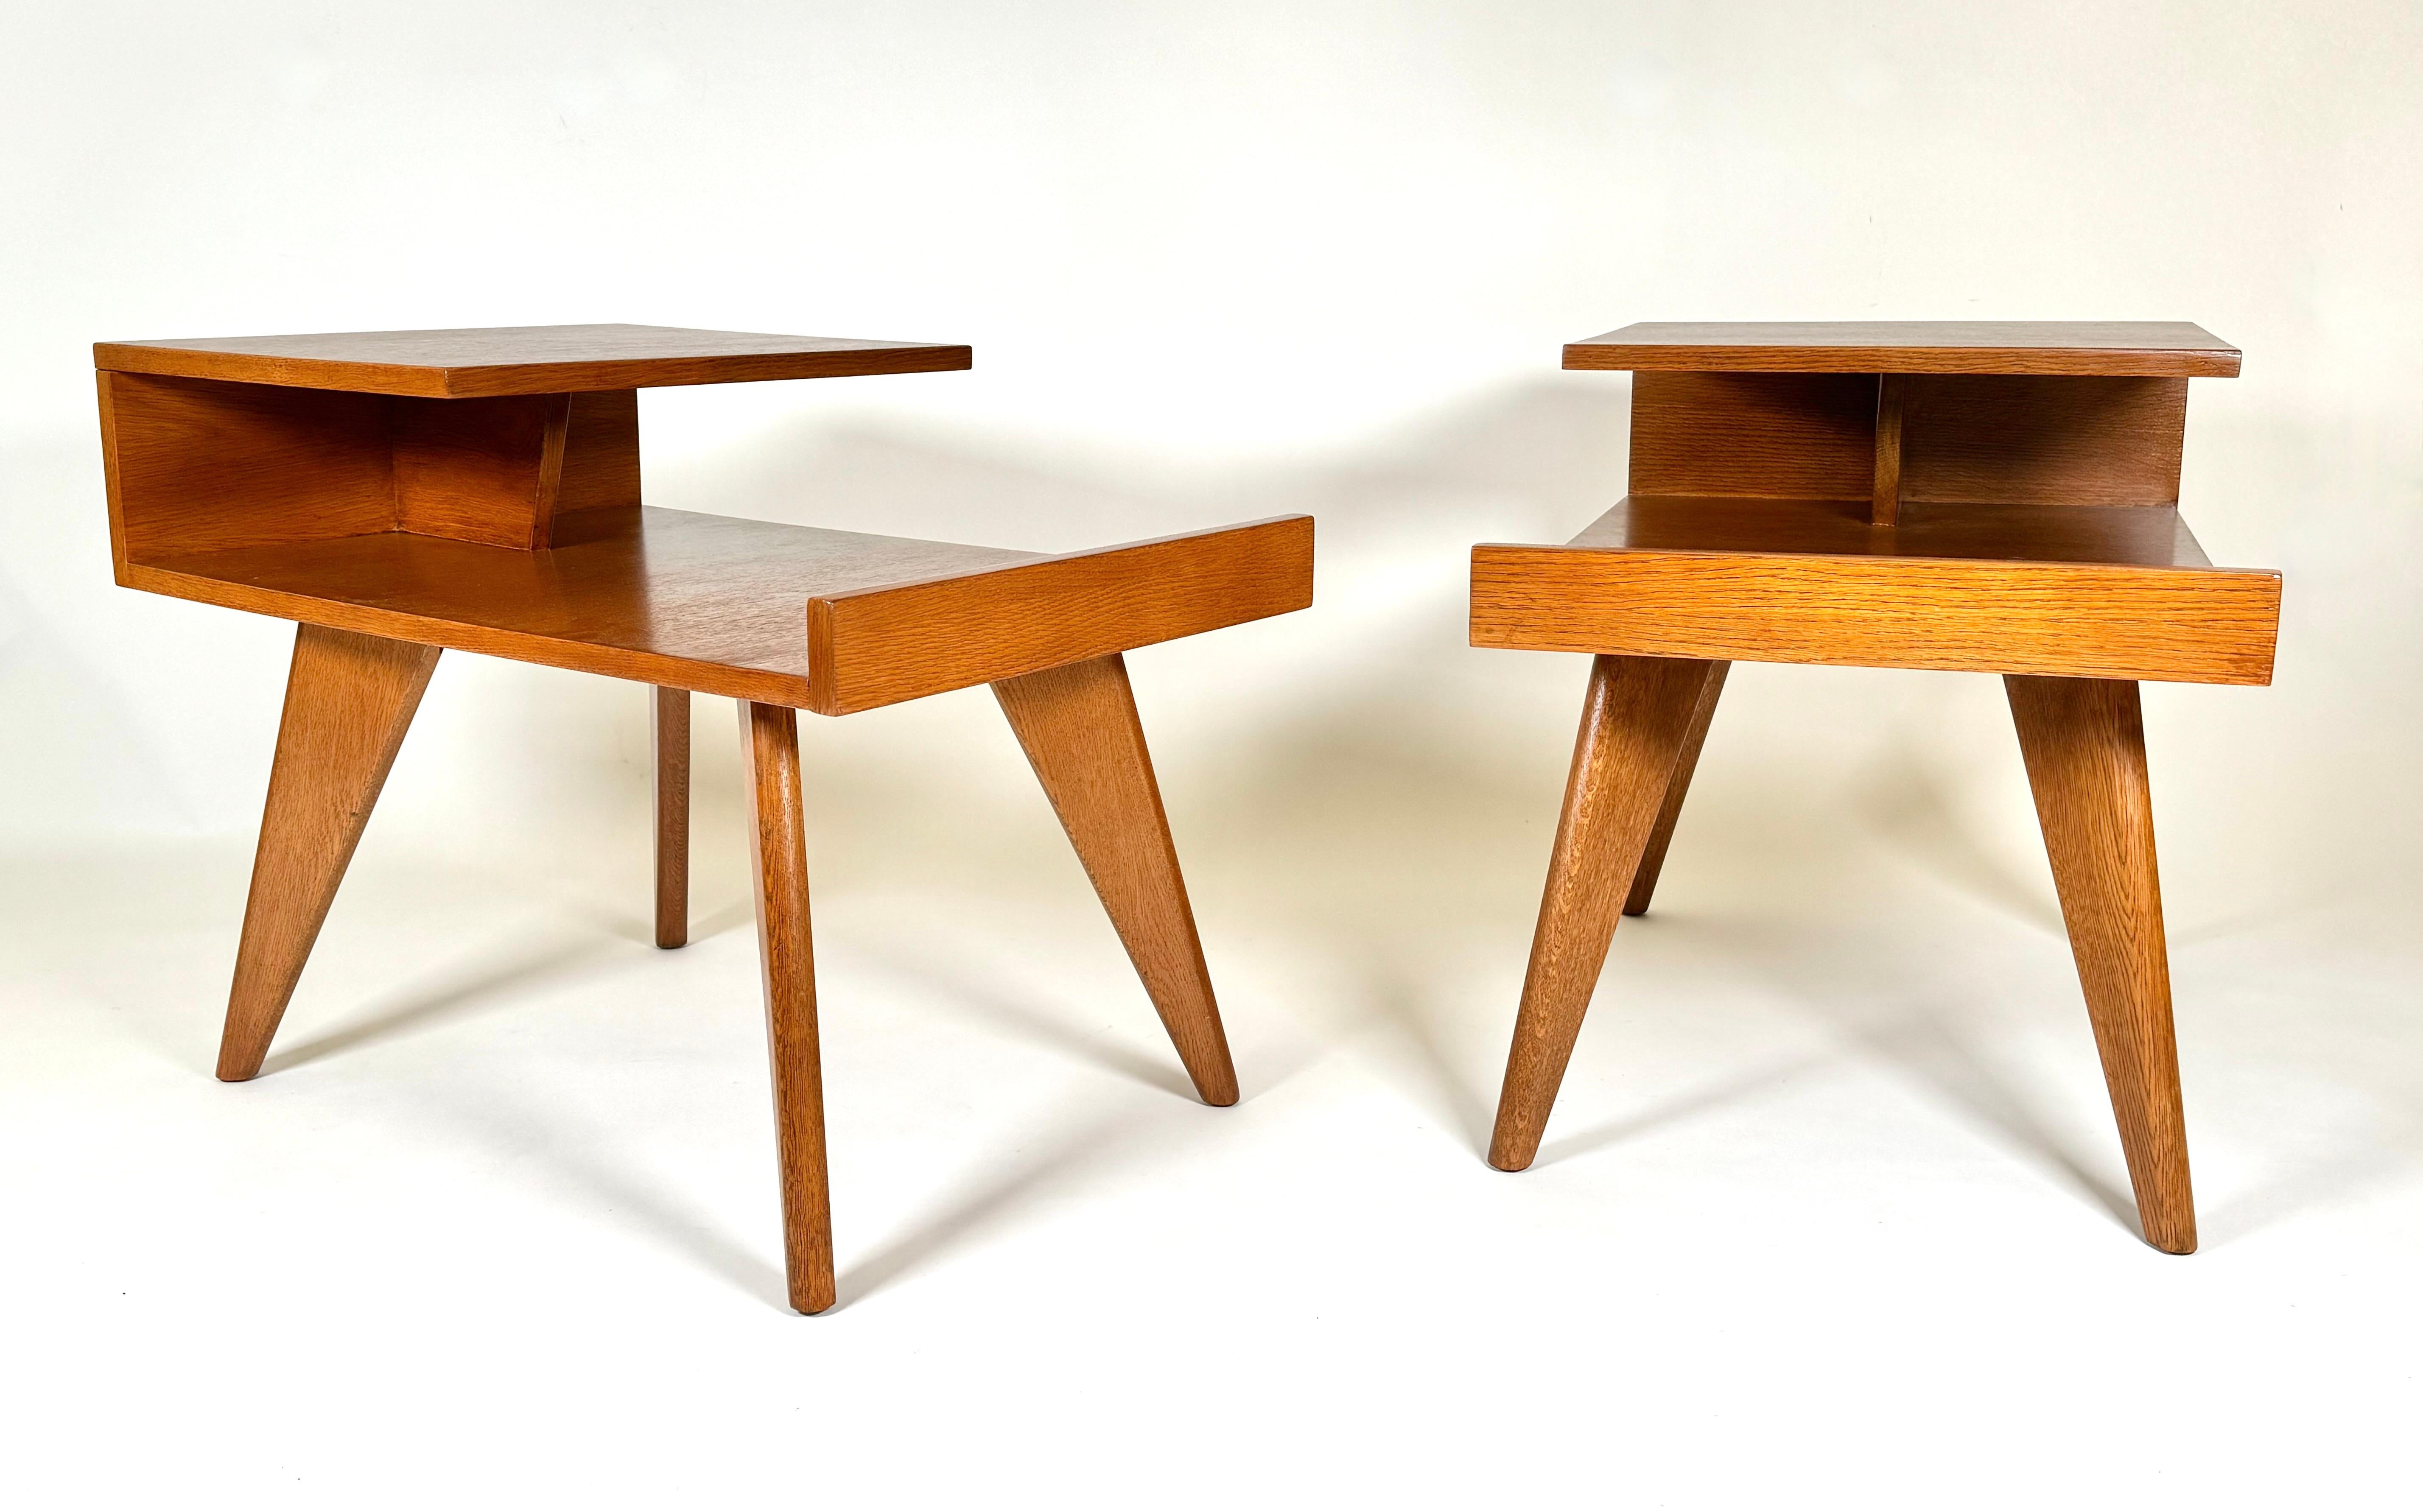 Une première conception de l'entreprise américaine  Dan Johnson (1918-1979) pour Hayden Hall Furniture, une paire de tables d'appoint en chêne avec des plateaux en porte-à-faux et des pieds triangulaires frappants. Ses premiers designs avaient des